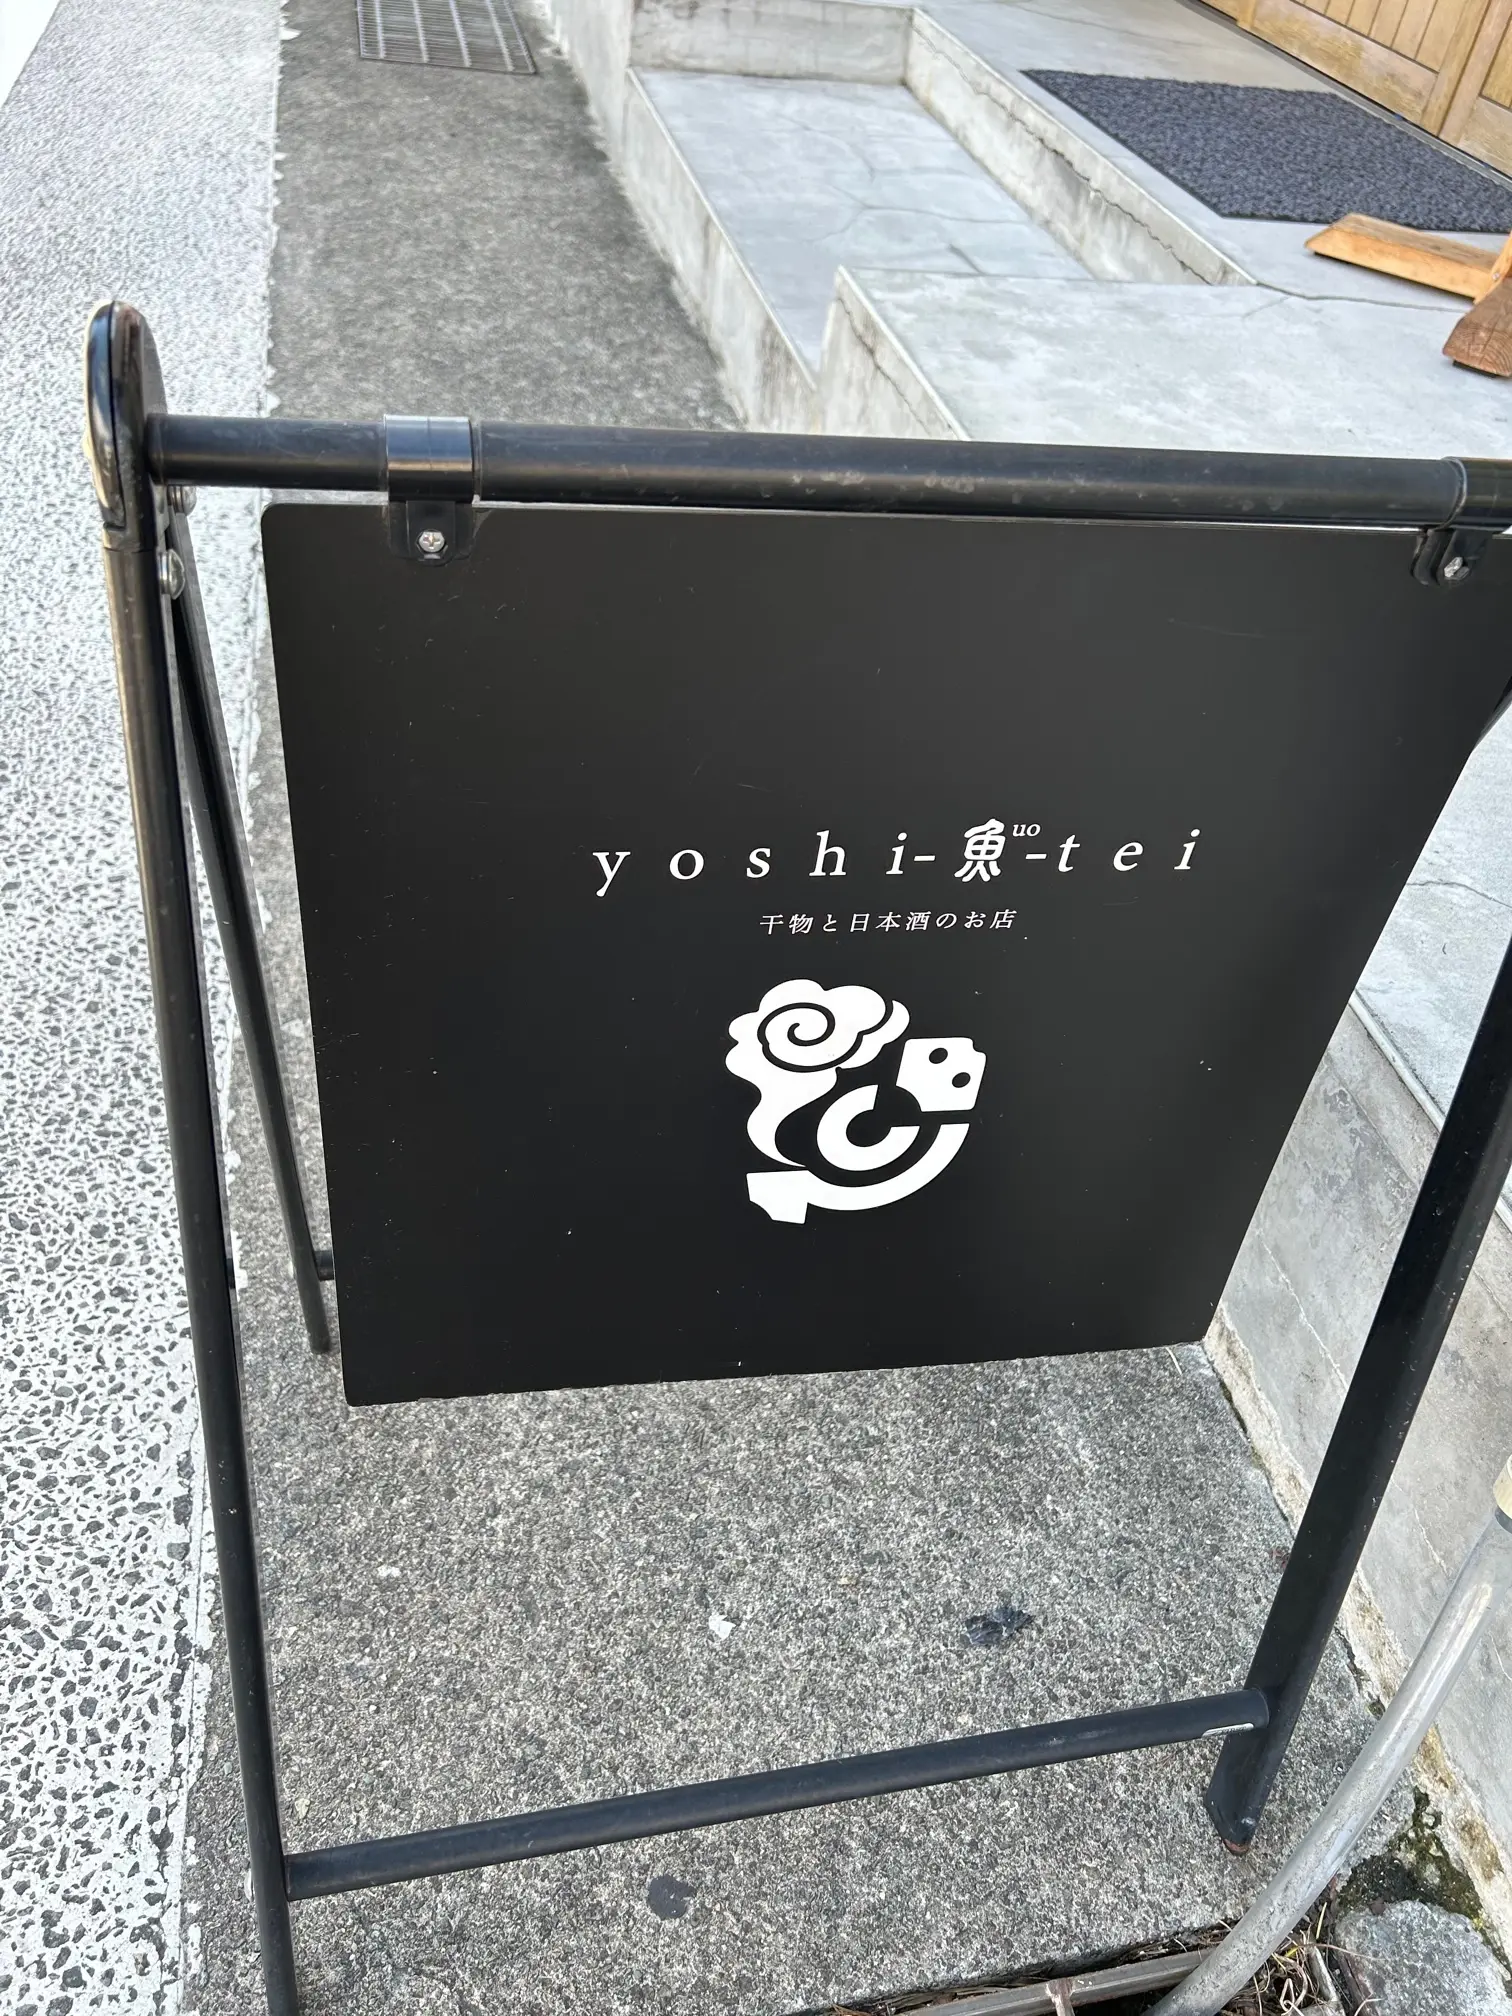 yoshi-魚-tei